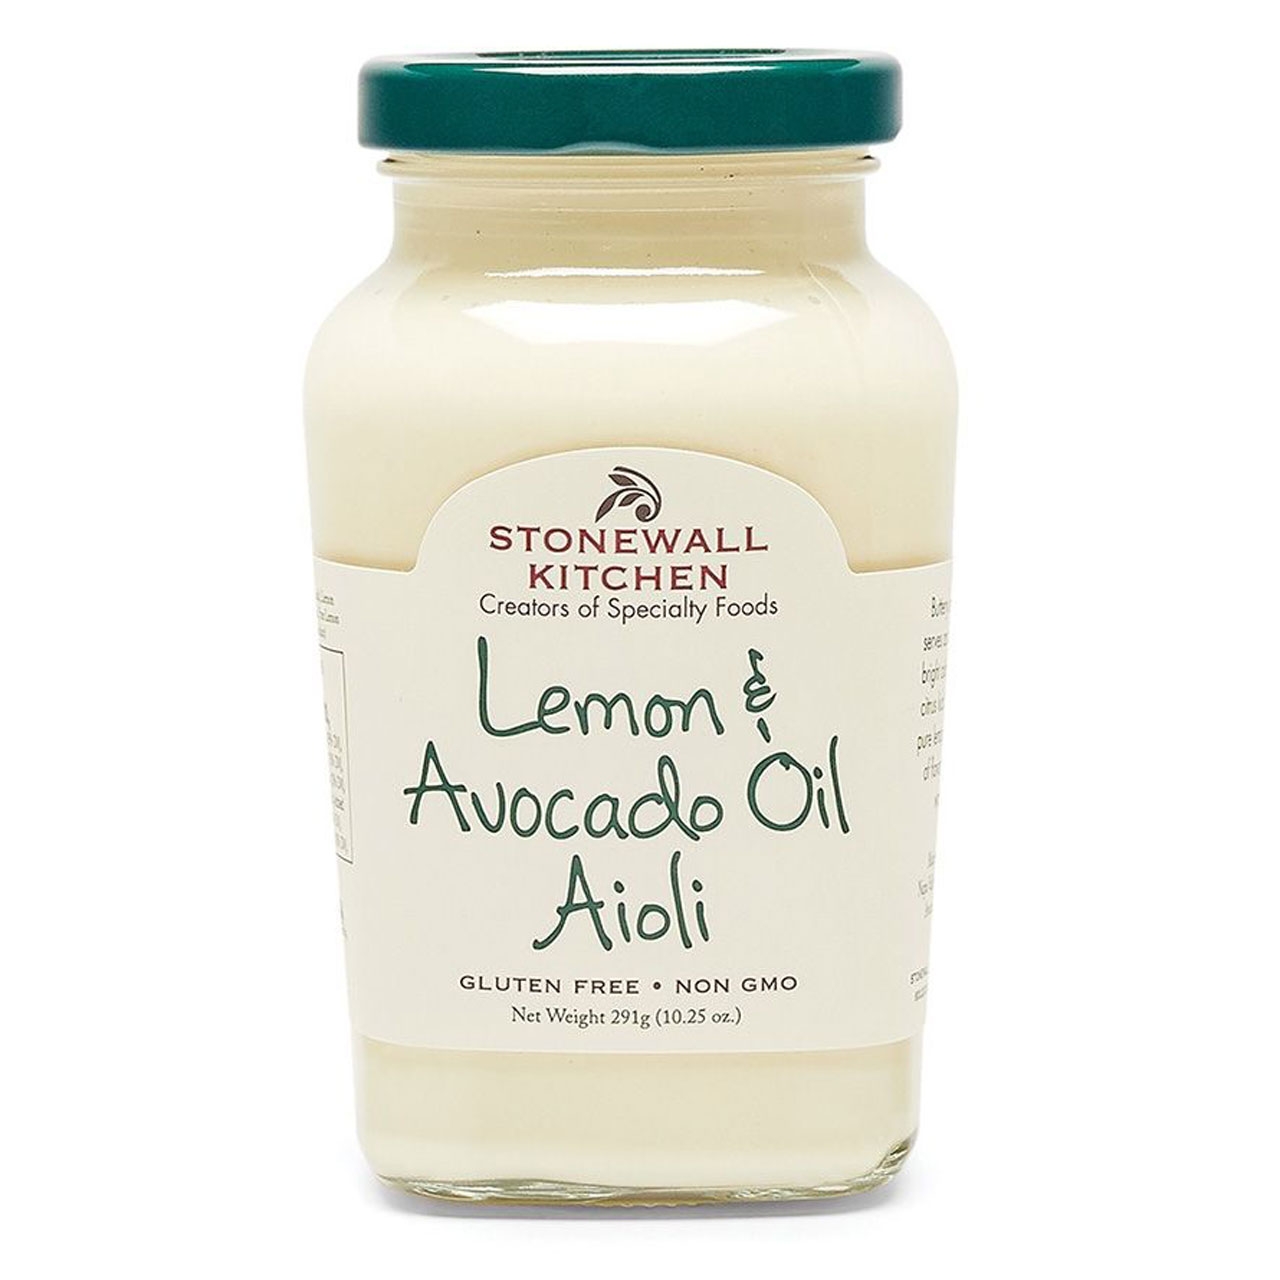 Stonewall Kitchen - Lemon & Avocado Oil Aioli